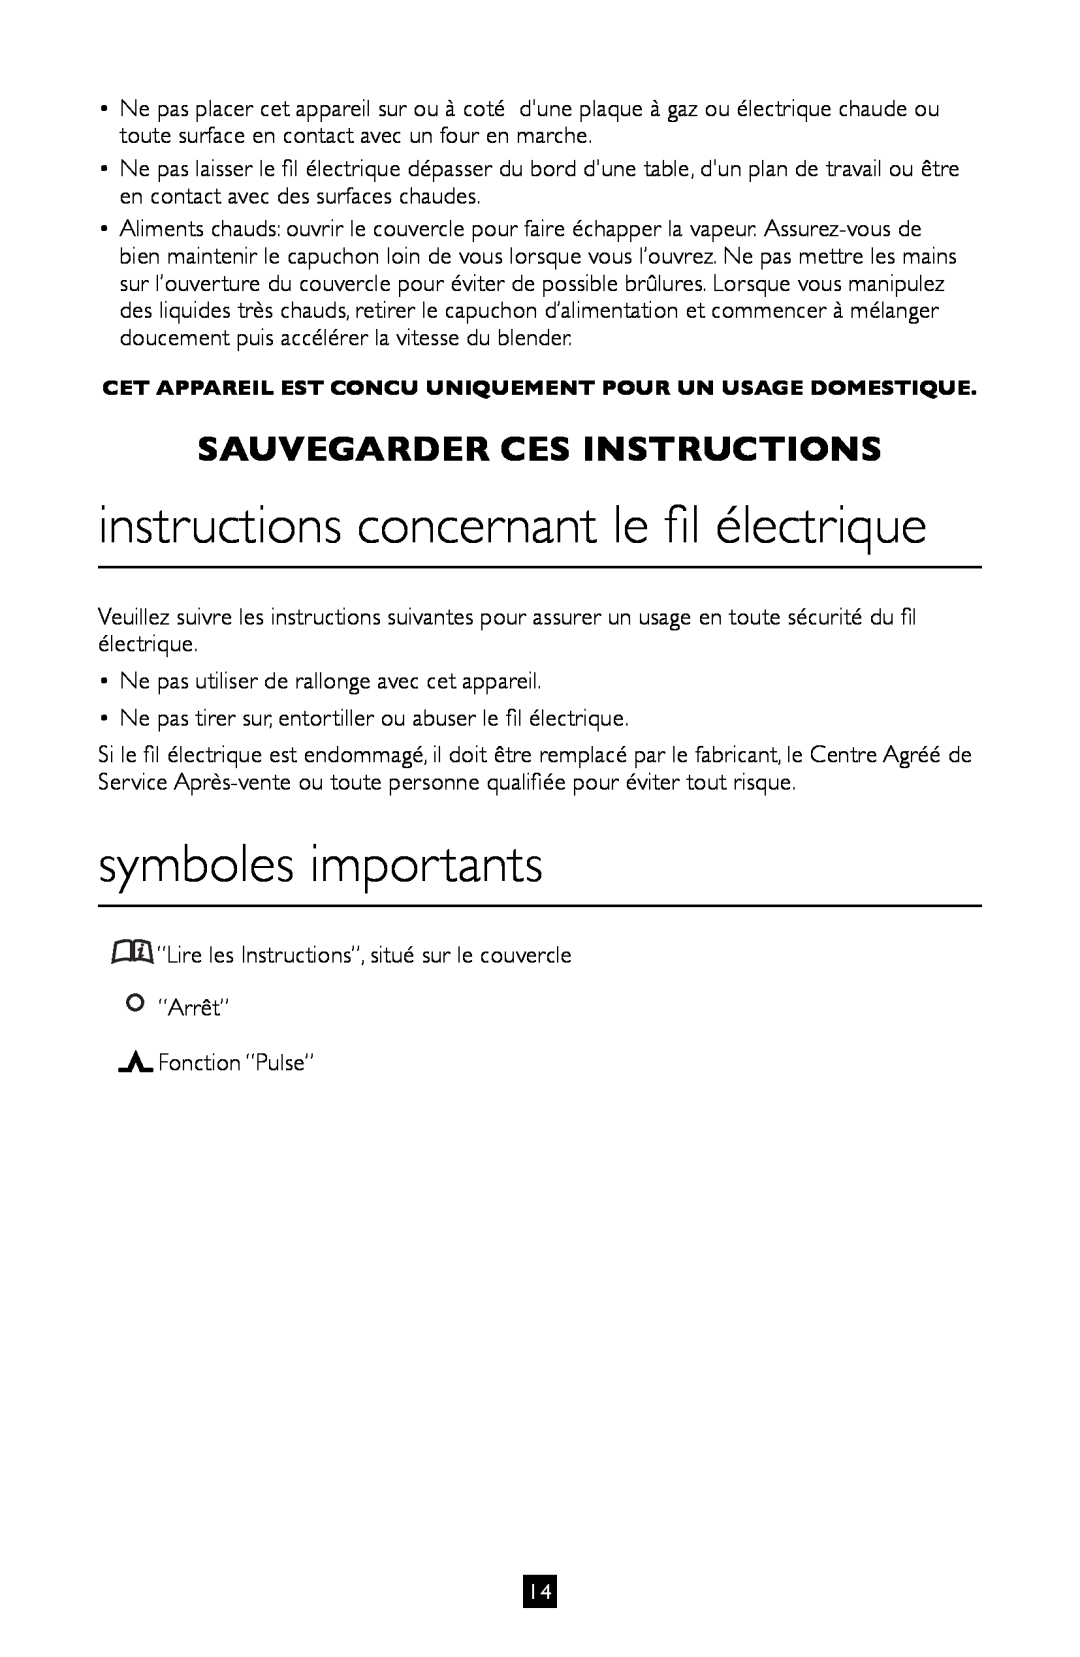 Villaware BLVLLAZ05H instructions concernant le fil électrique, symboles importants, Sauvegarder Ces Instructions 